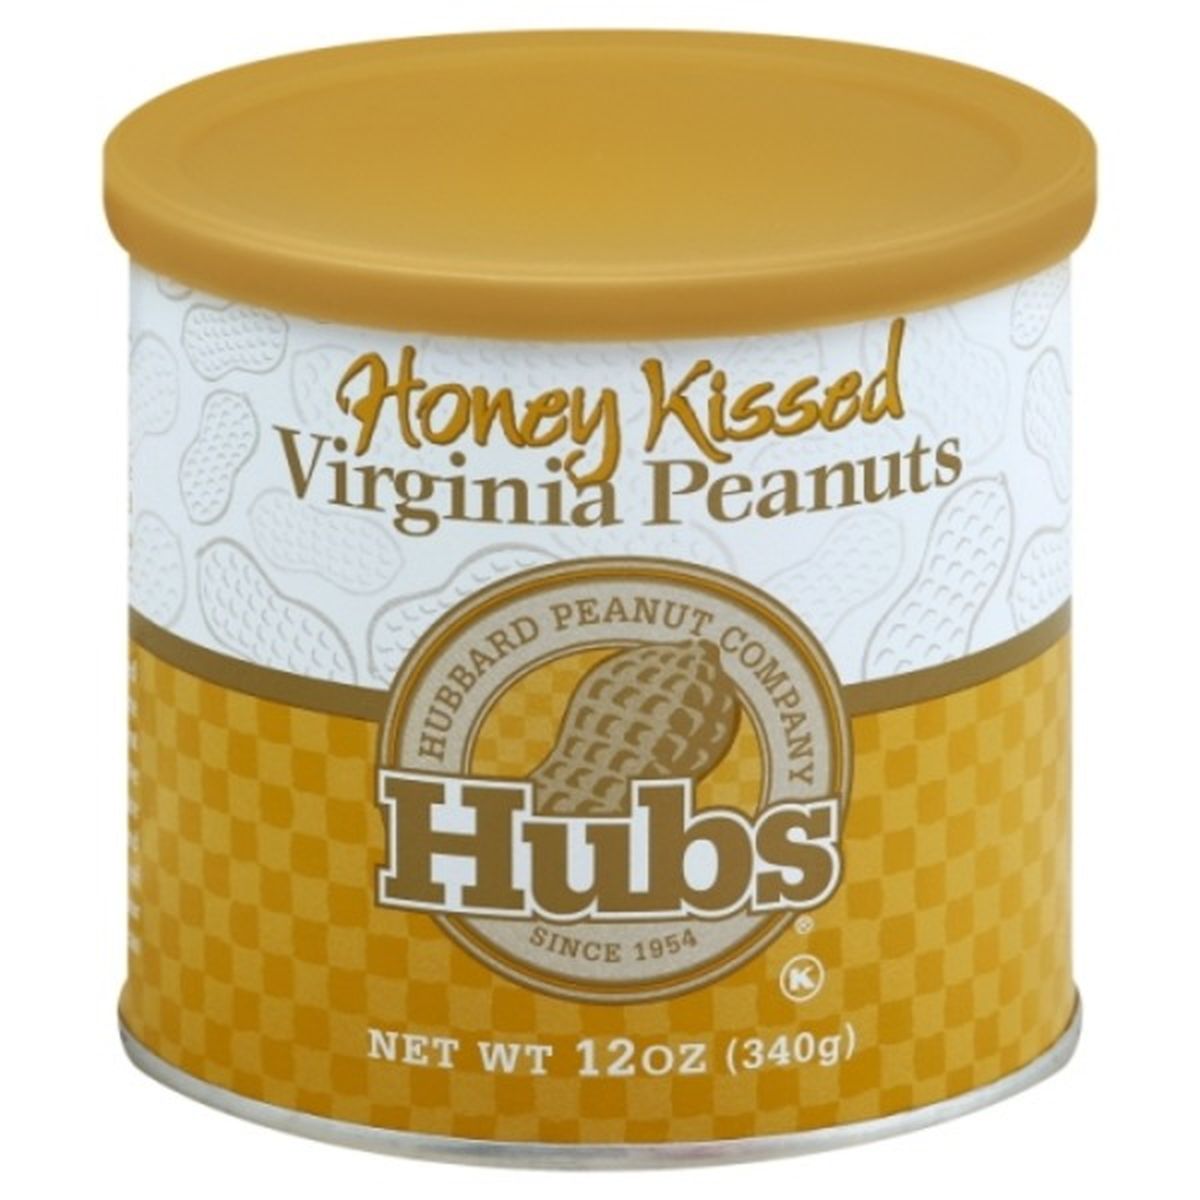 Calories in Hubs Peanuts, Virginia, Honey Kissed